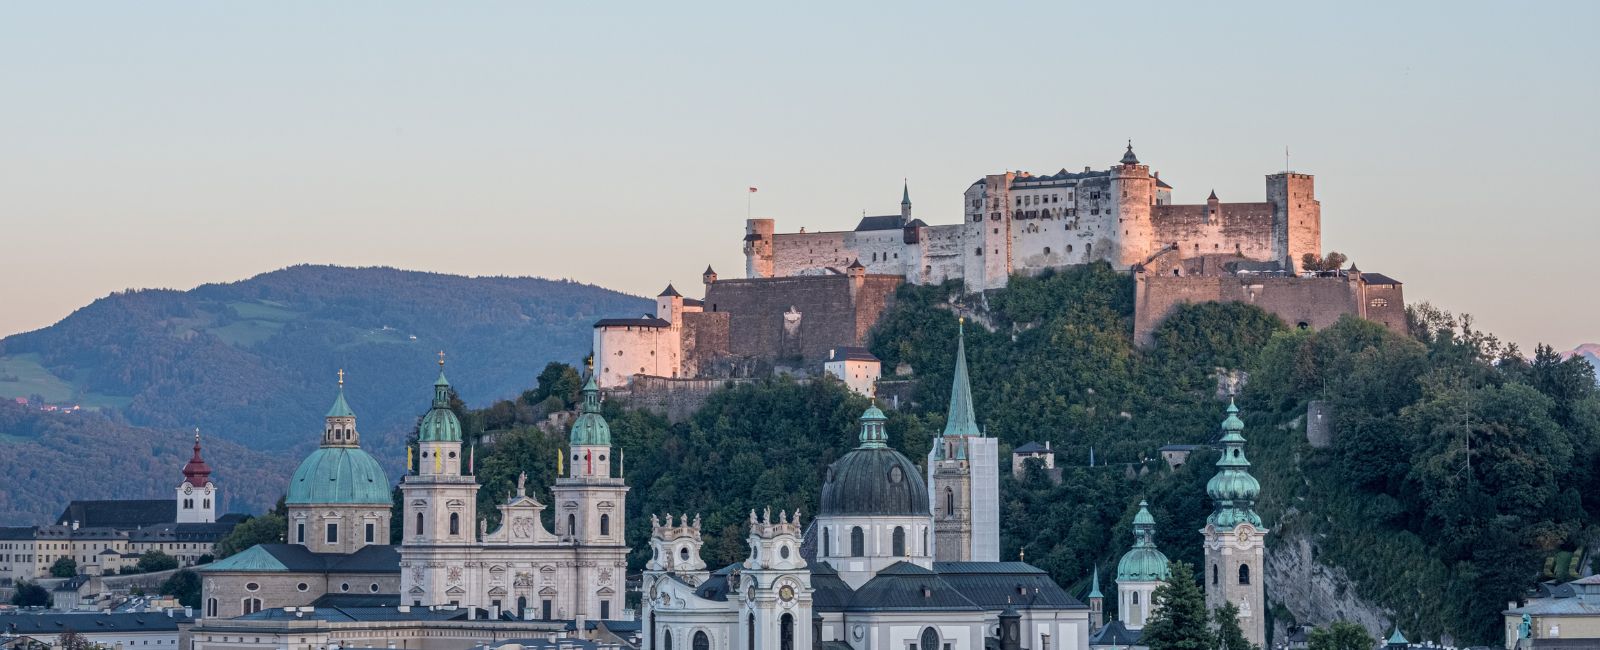 View of Hohensalzburg Fortress in Salzburg